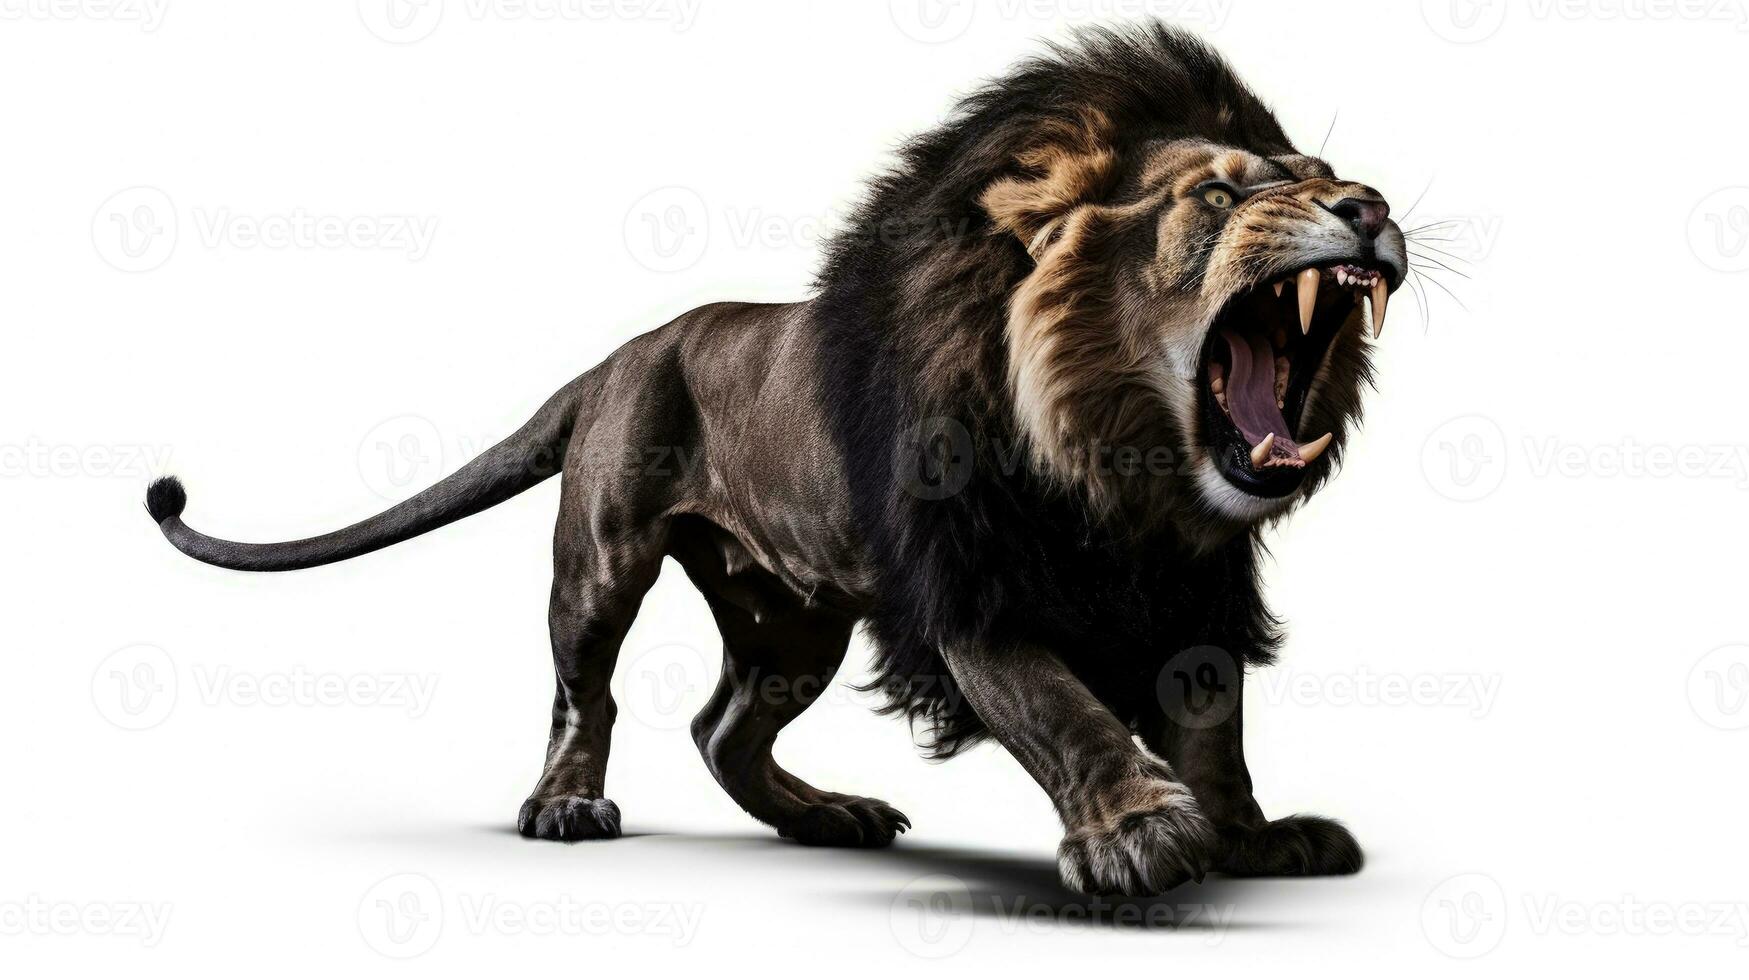 adulto masculino leão Panthera leo pulando com aberto boca em branco fundo. silhueta conceito foto